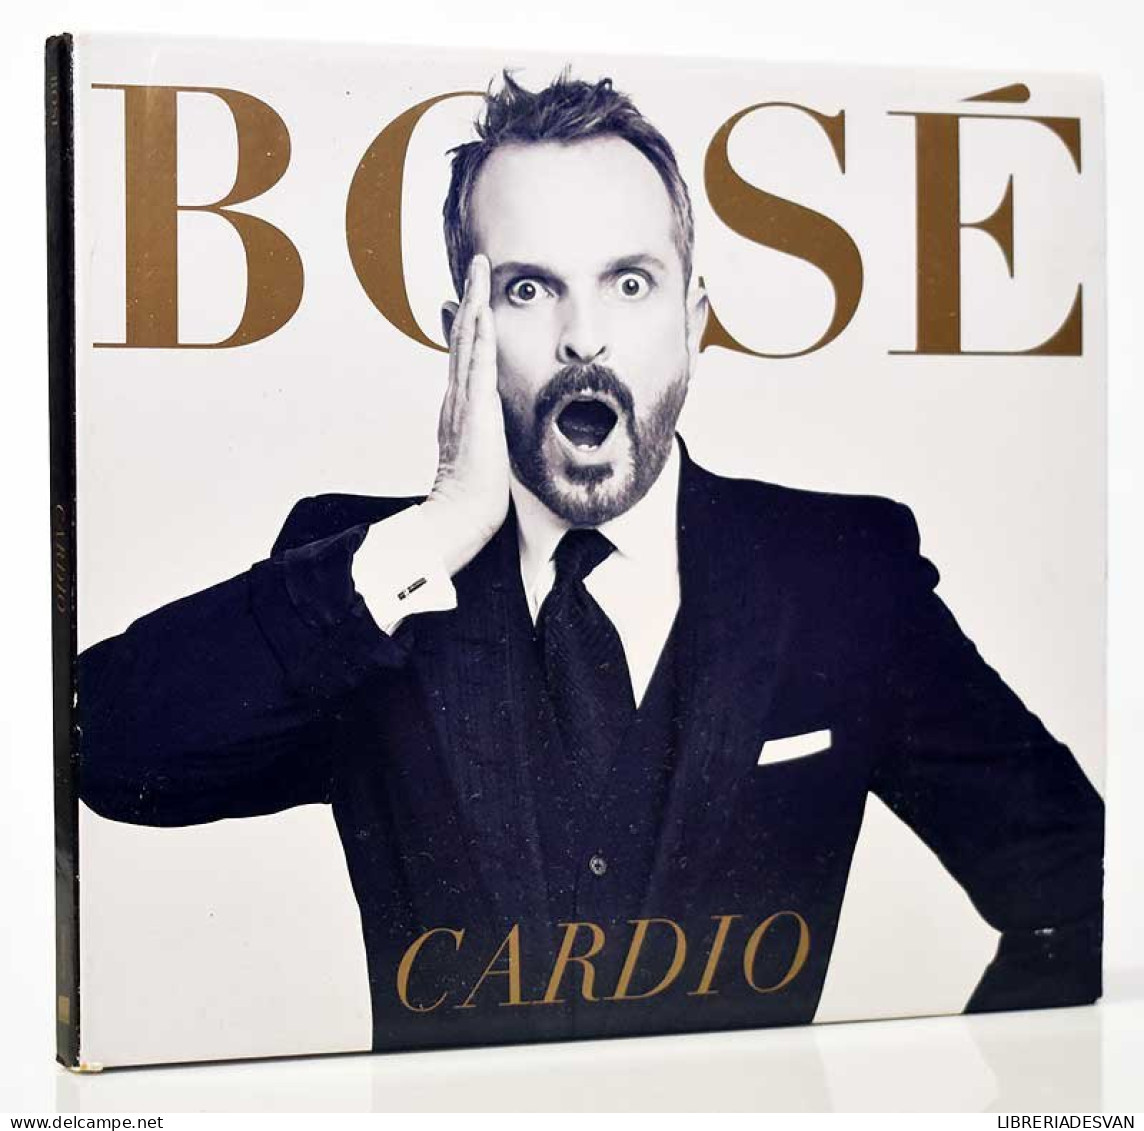 Bosé - Cardio. CD - Disco, Pop